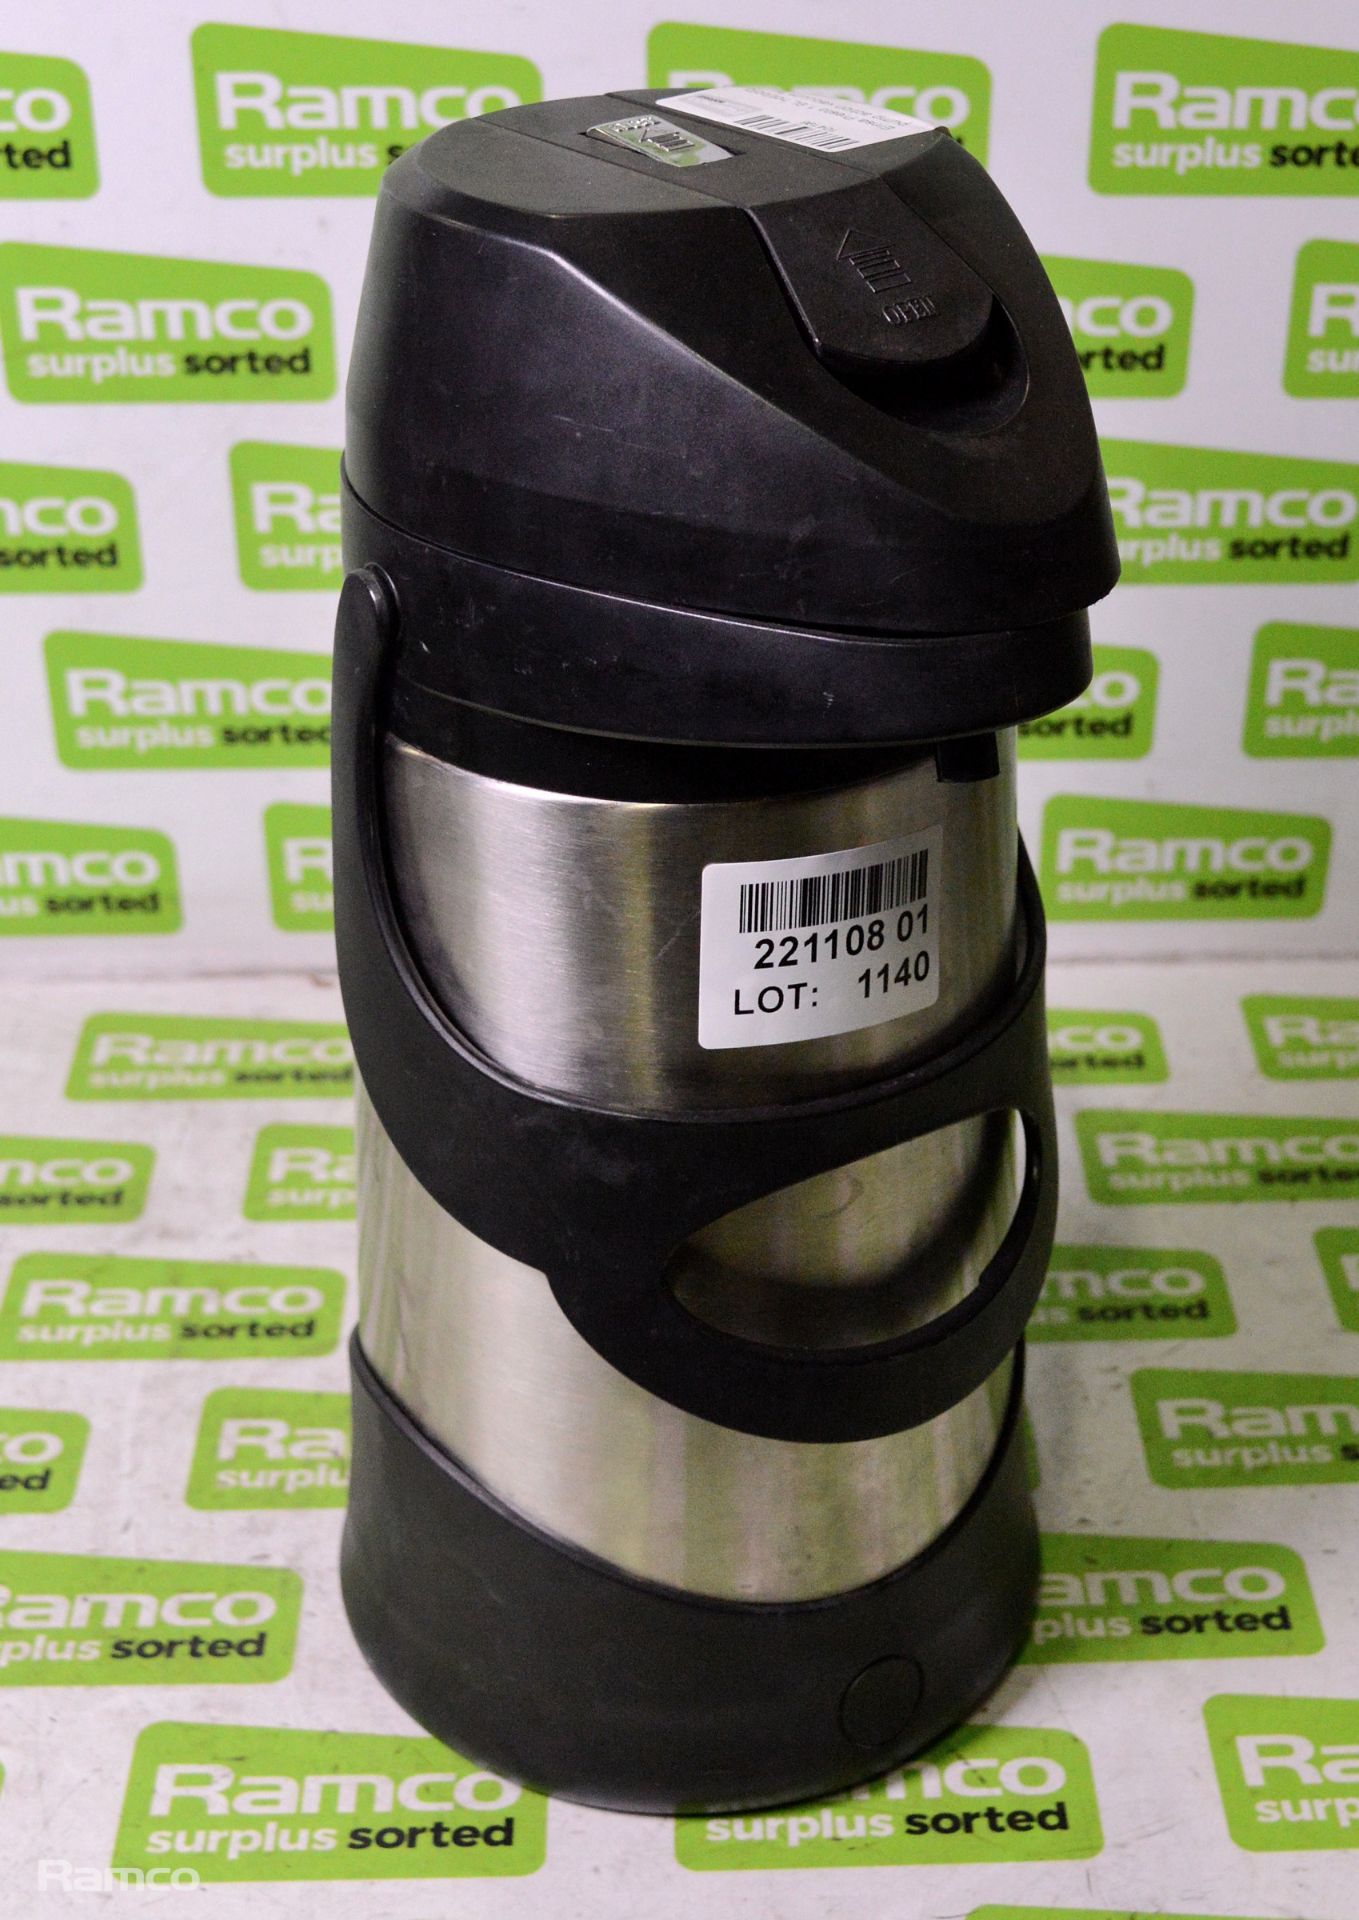 Emsa Presto 1.9L hot/cold pump action vacuum flask